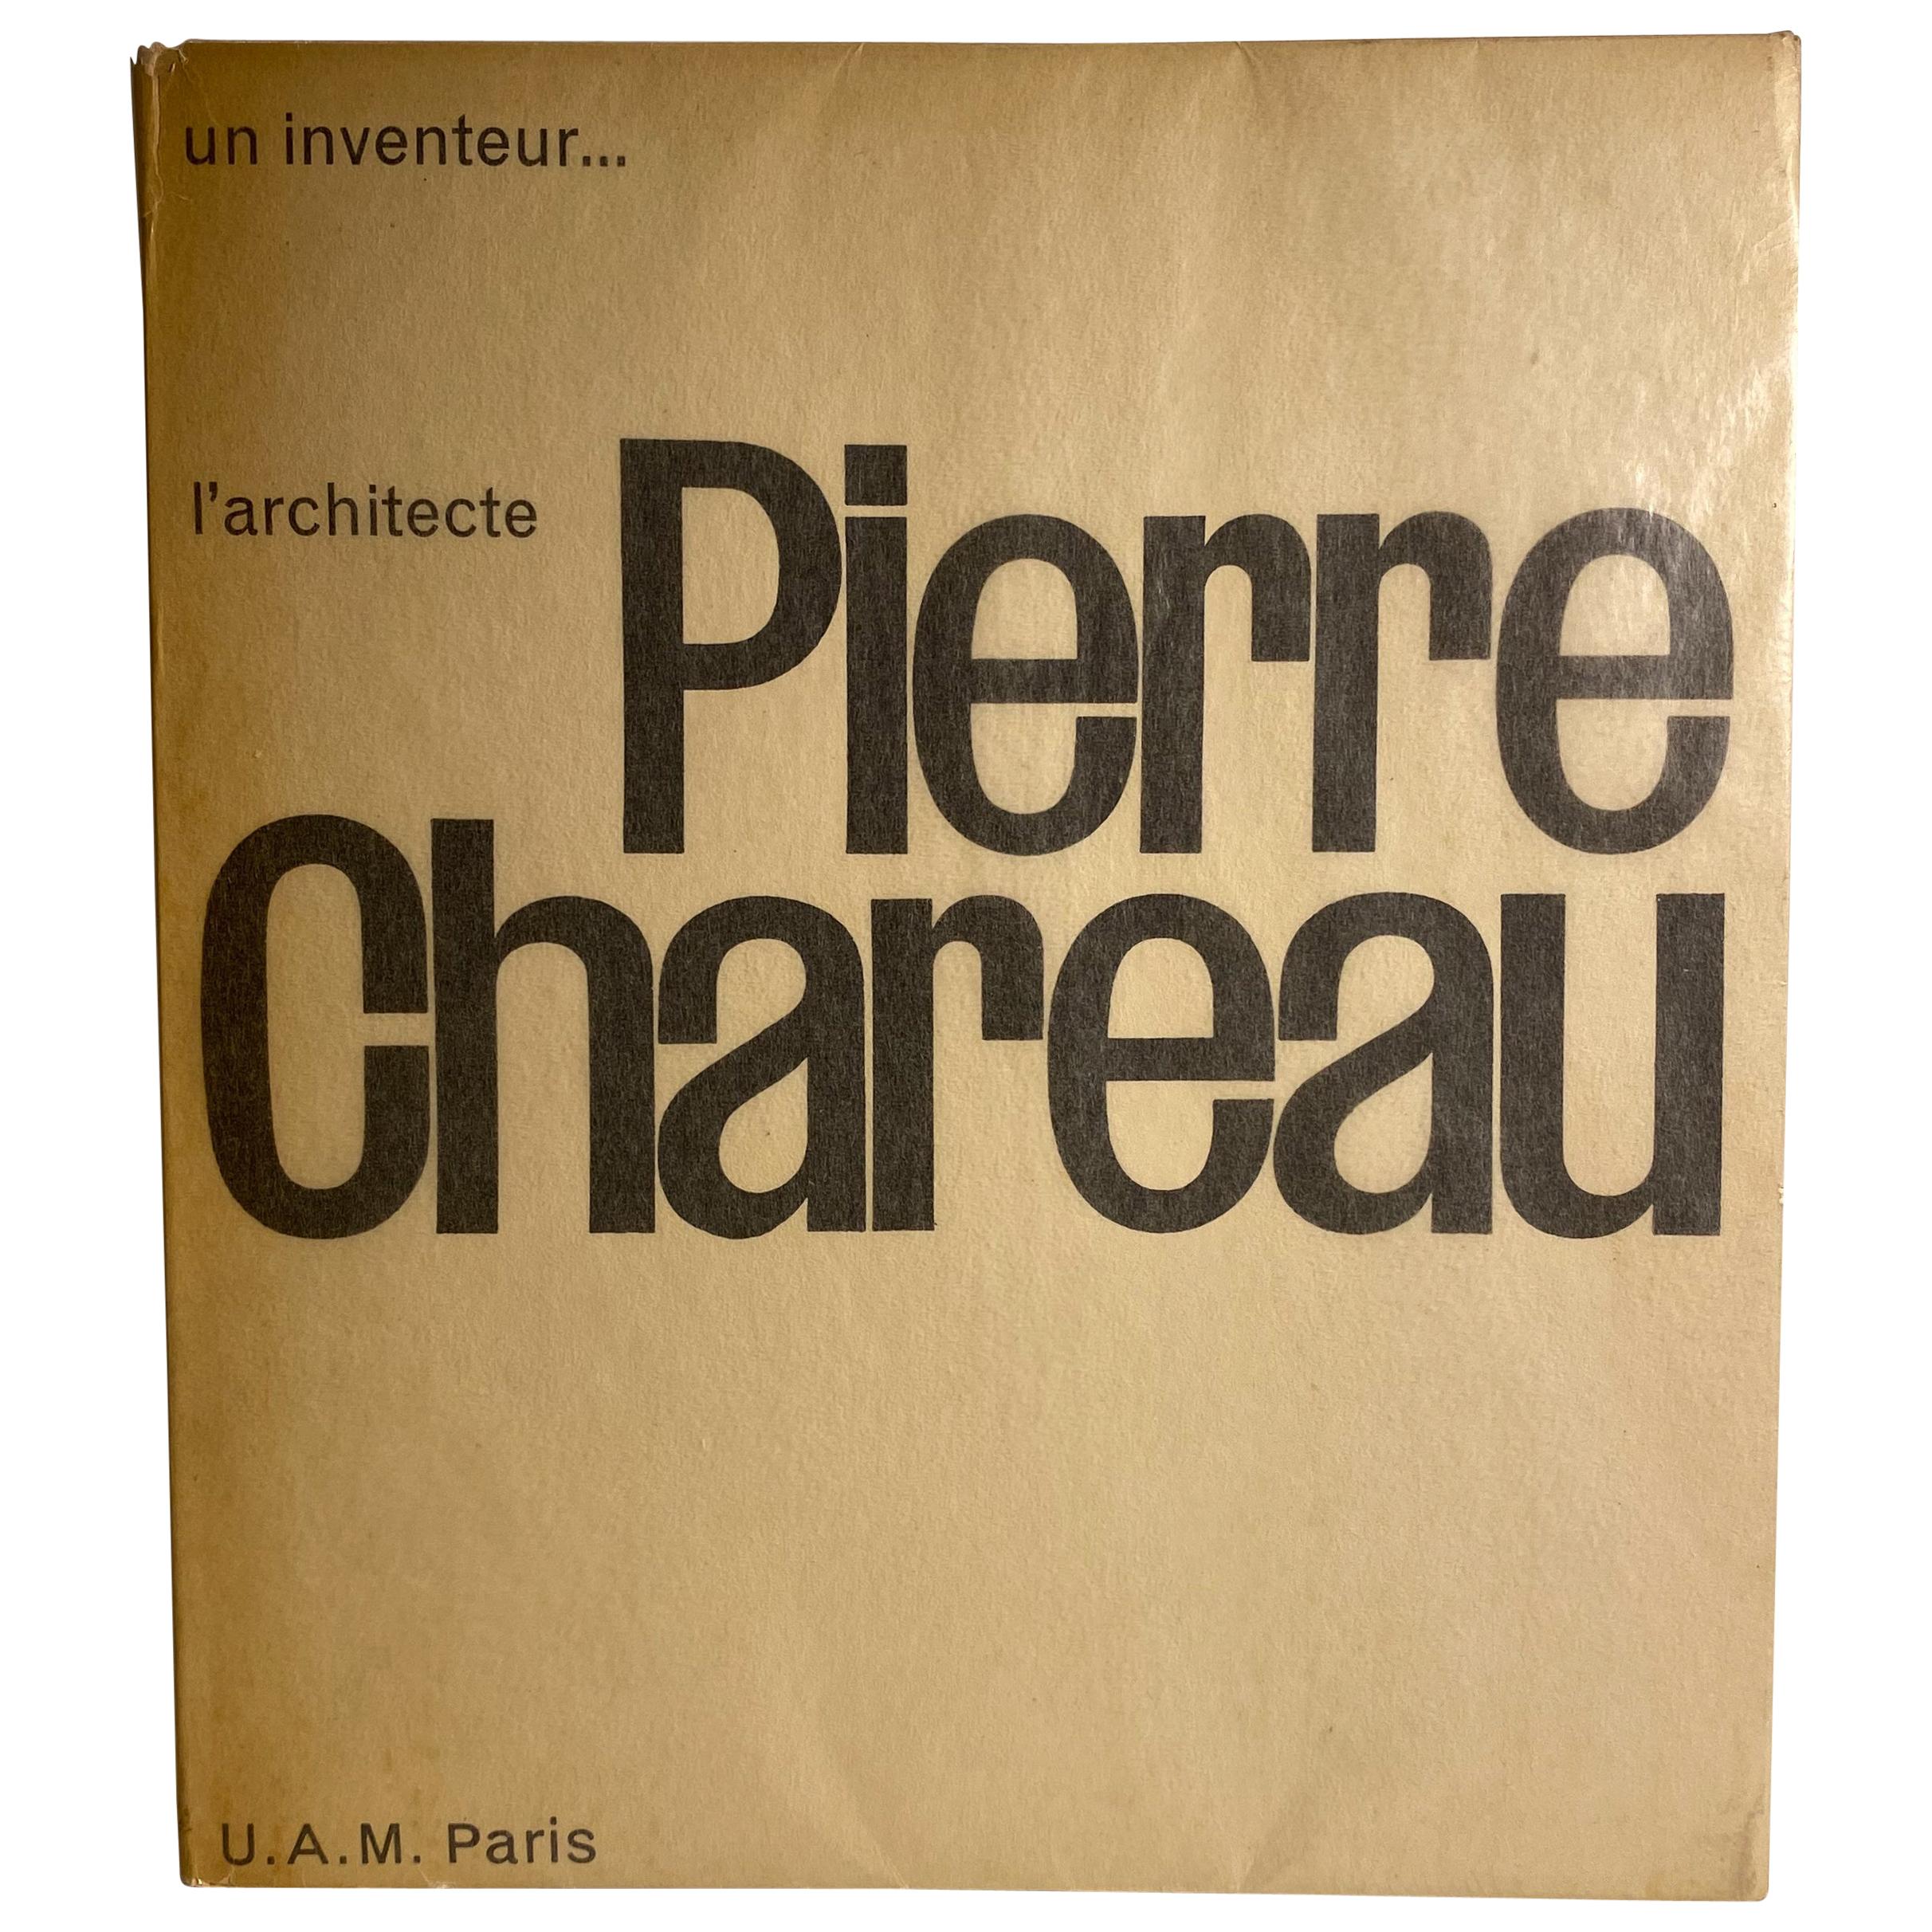 Pierre Chareau : Un Inventeur, l'architecte en vente